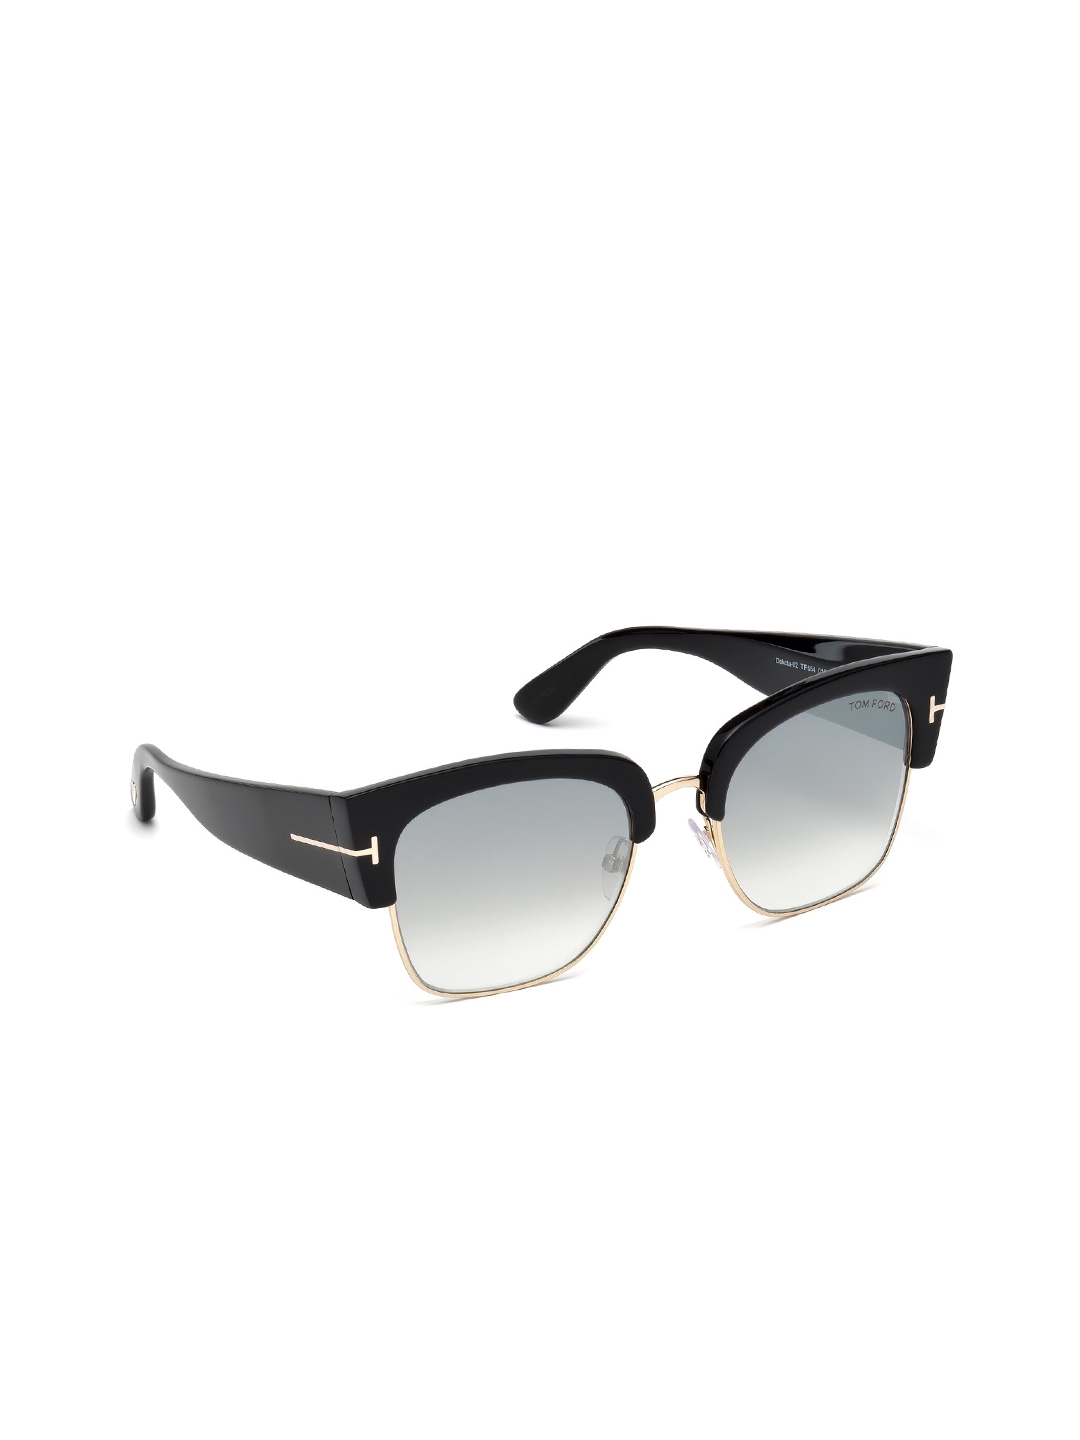 Tom Ford Women Grey Lens   Black Square Sunglasses   FT0563 64 33G Gold